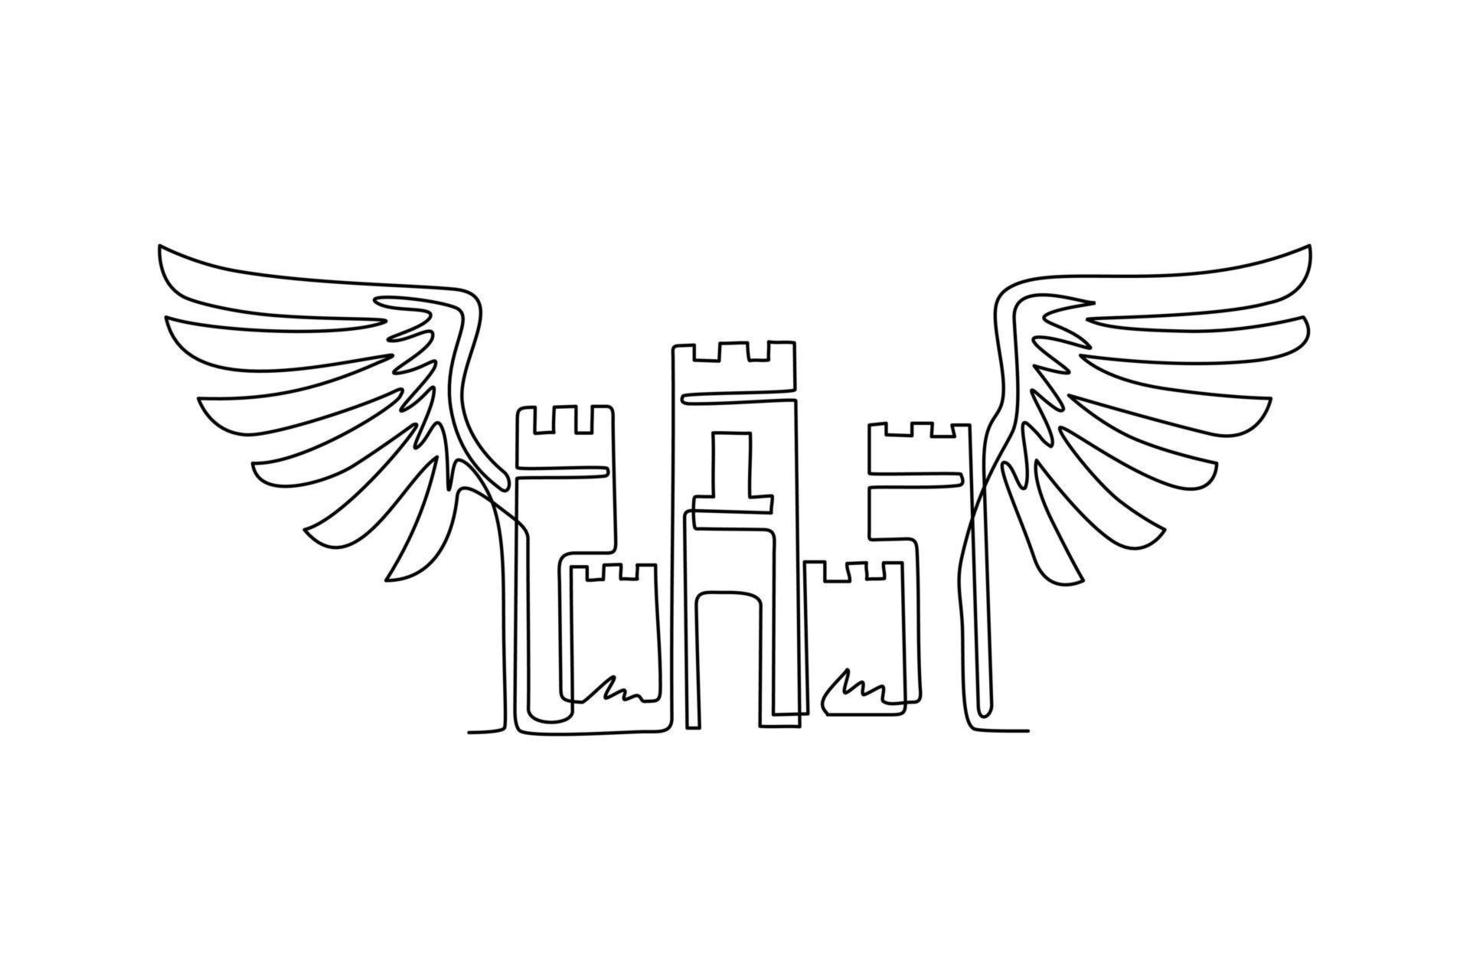 emblema de castillo antiguo de dibujo de una sola línea con alas. logotipo decorativo del escudo de armas heráldico aislado. logotipo adornado en estilo antiguo sobre fondo blanco. vector gráfico de diseño de dibujo de línea continua